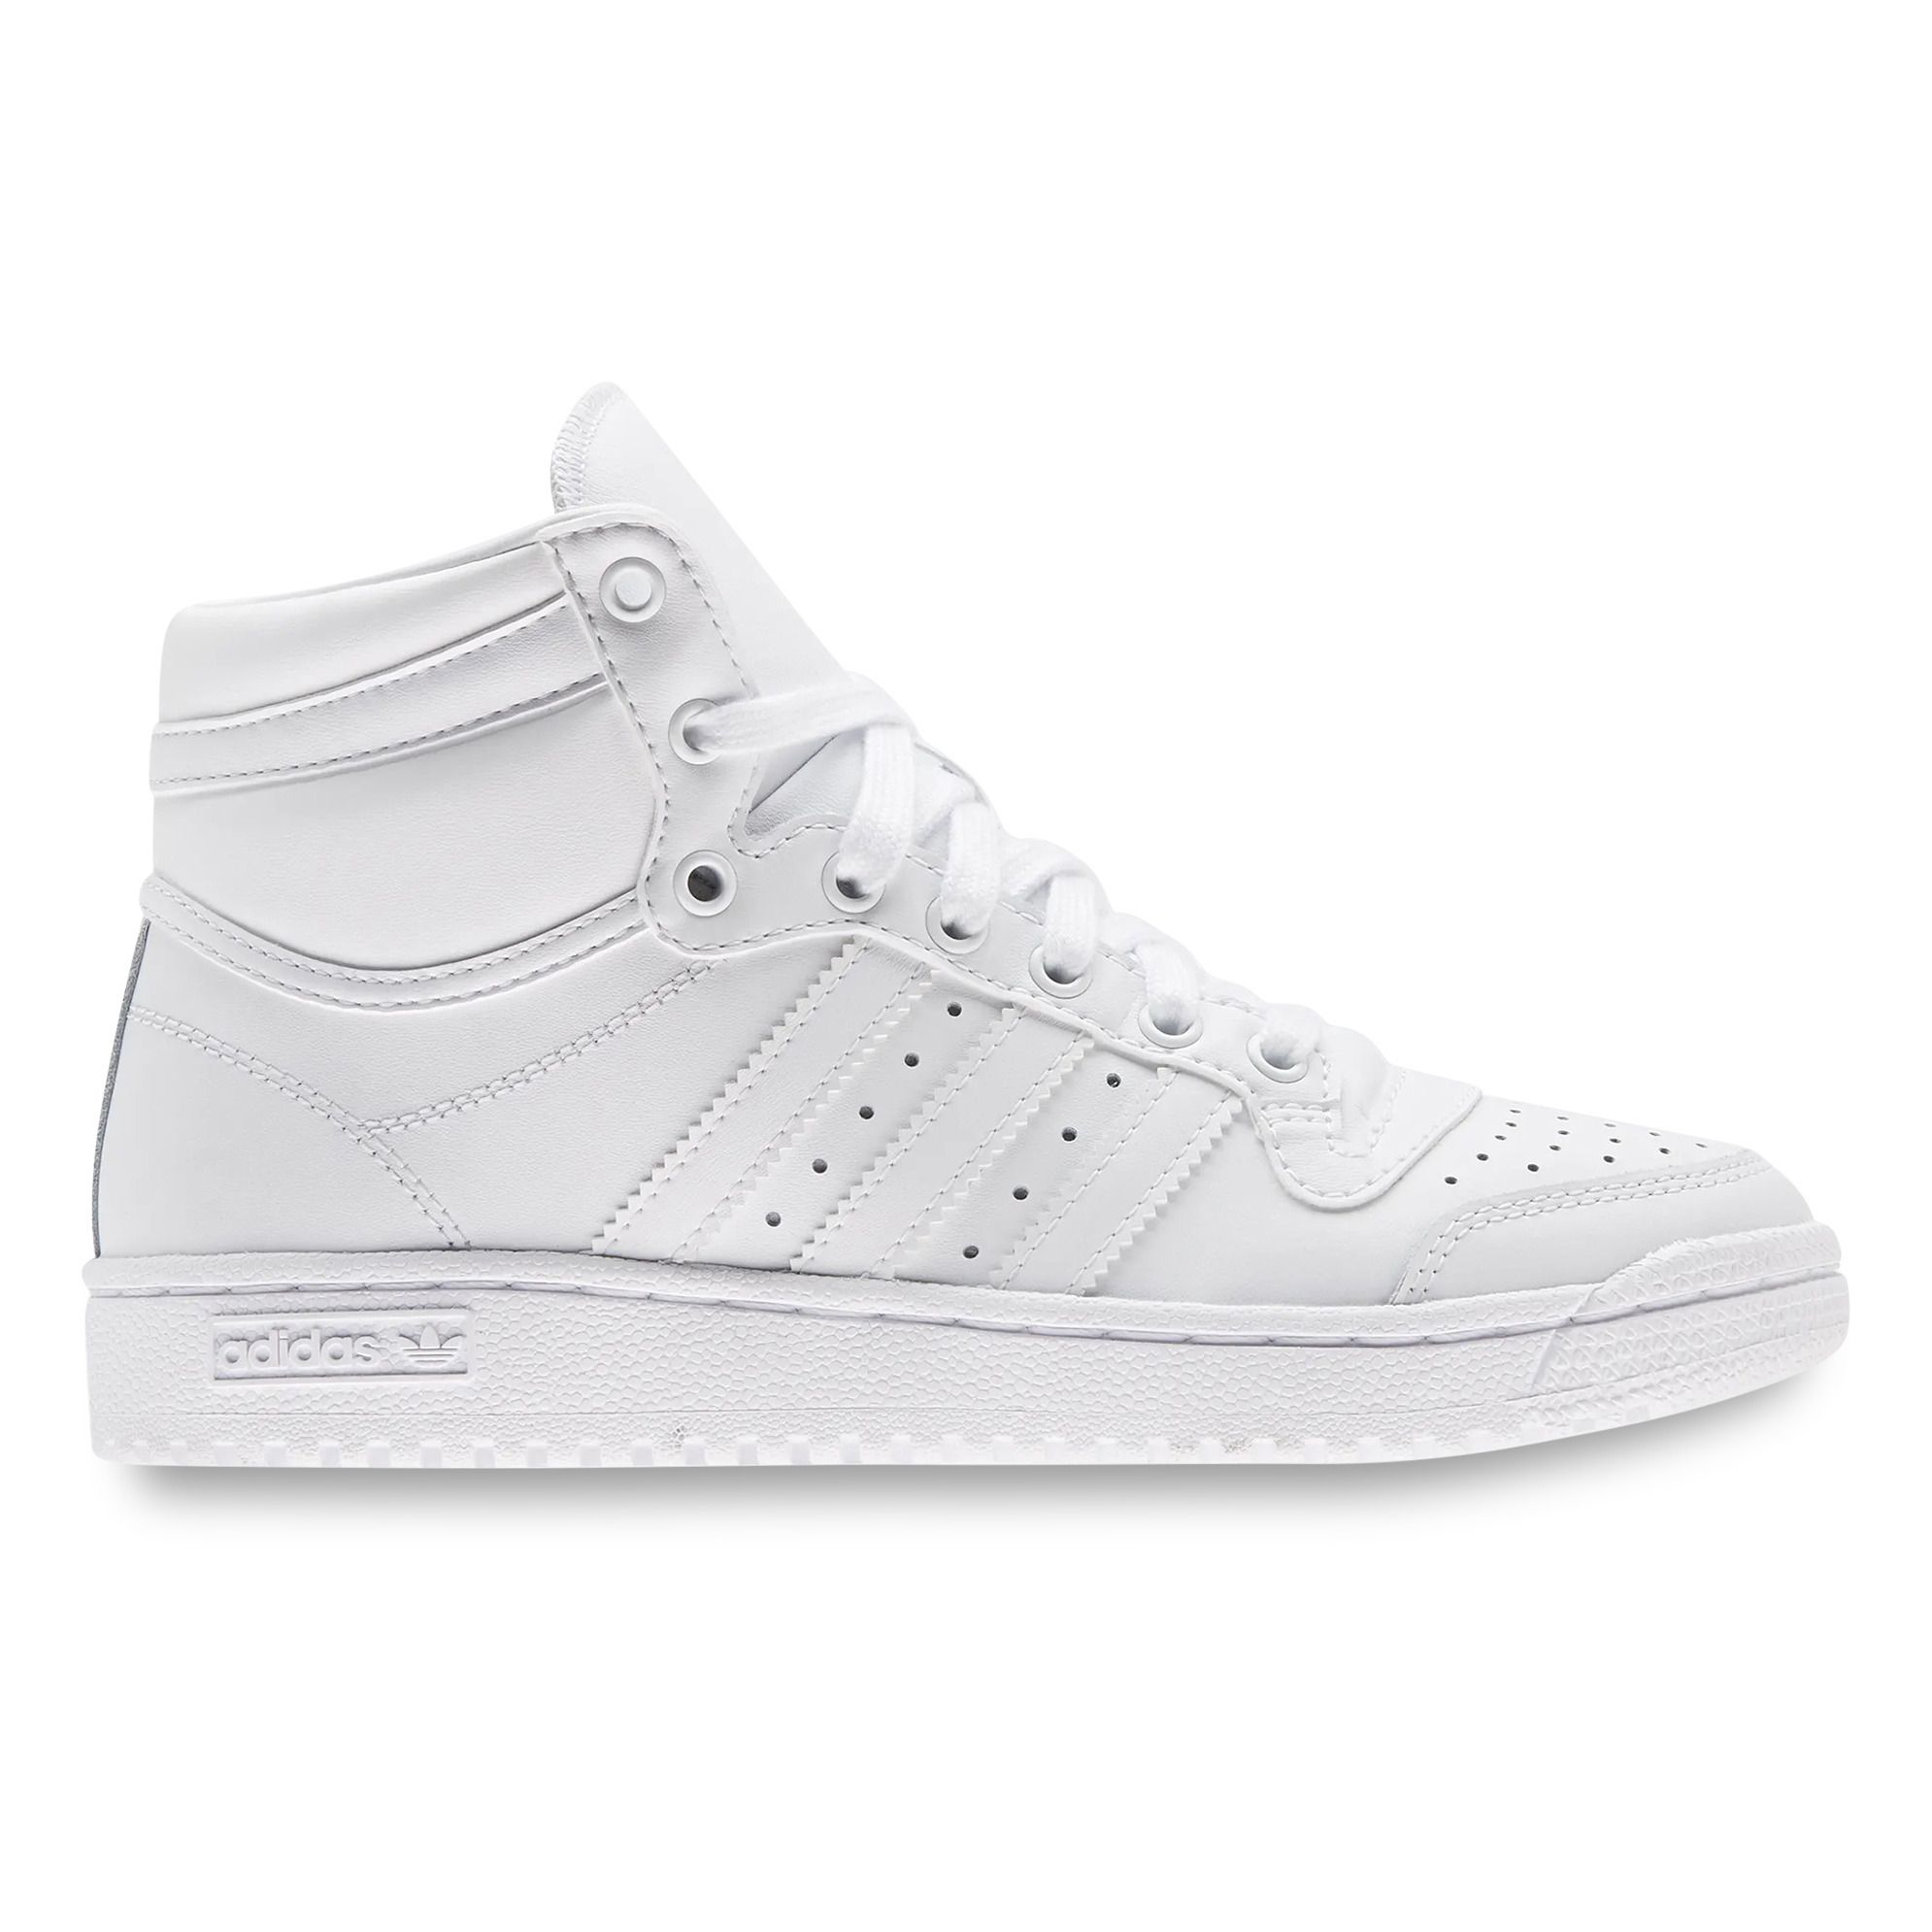 Adidas - Ten High-top Sneakers - White | Smallable